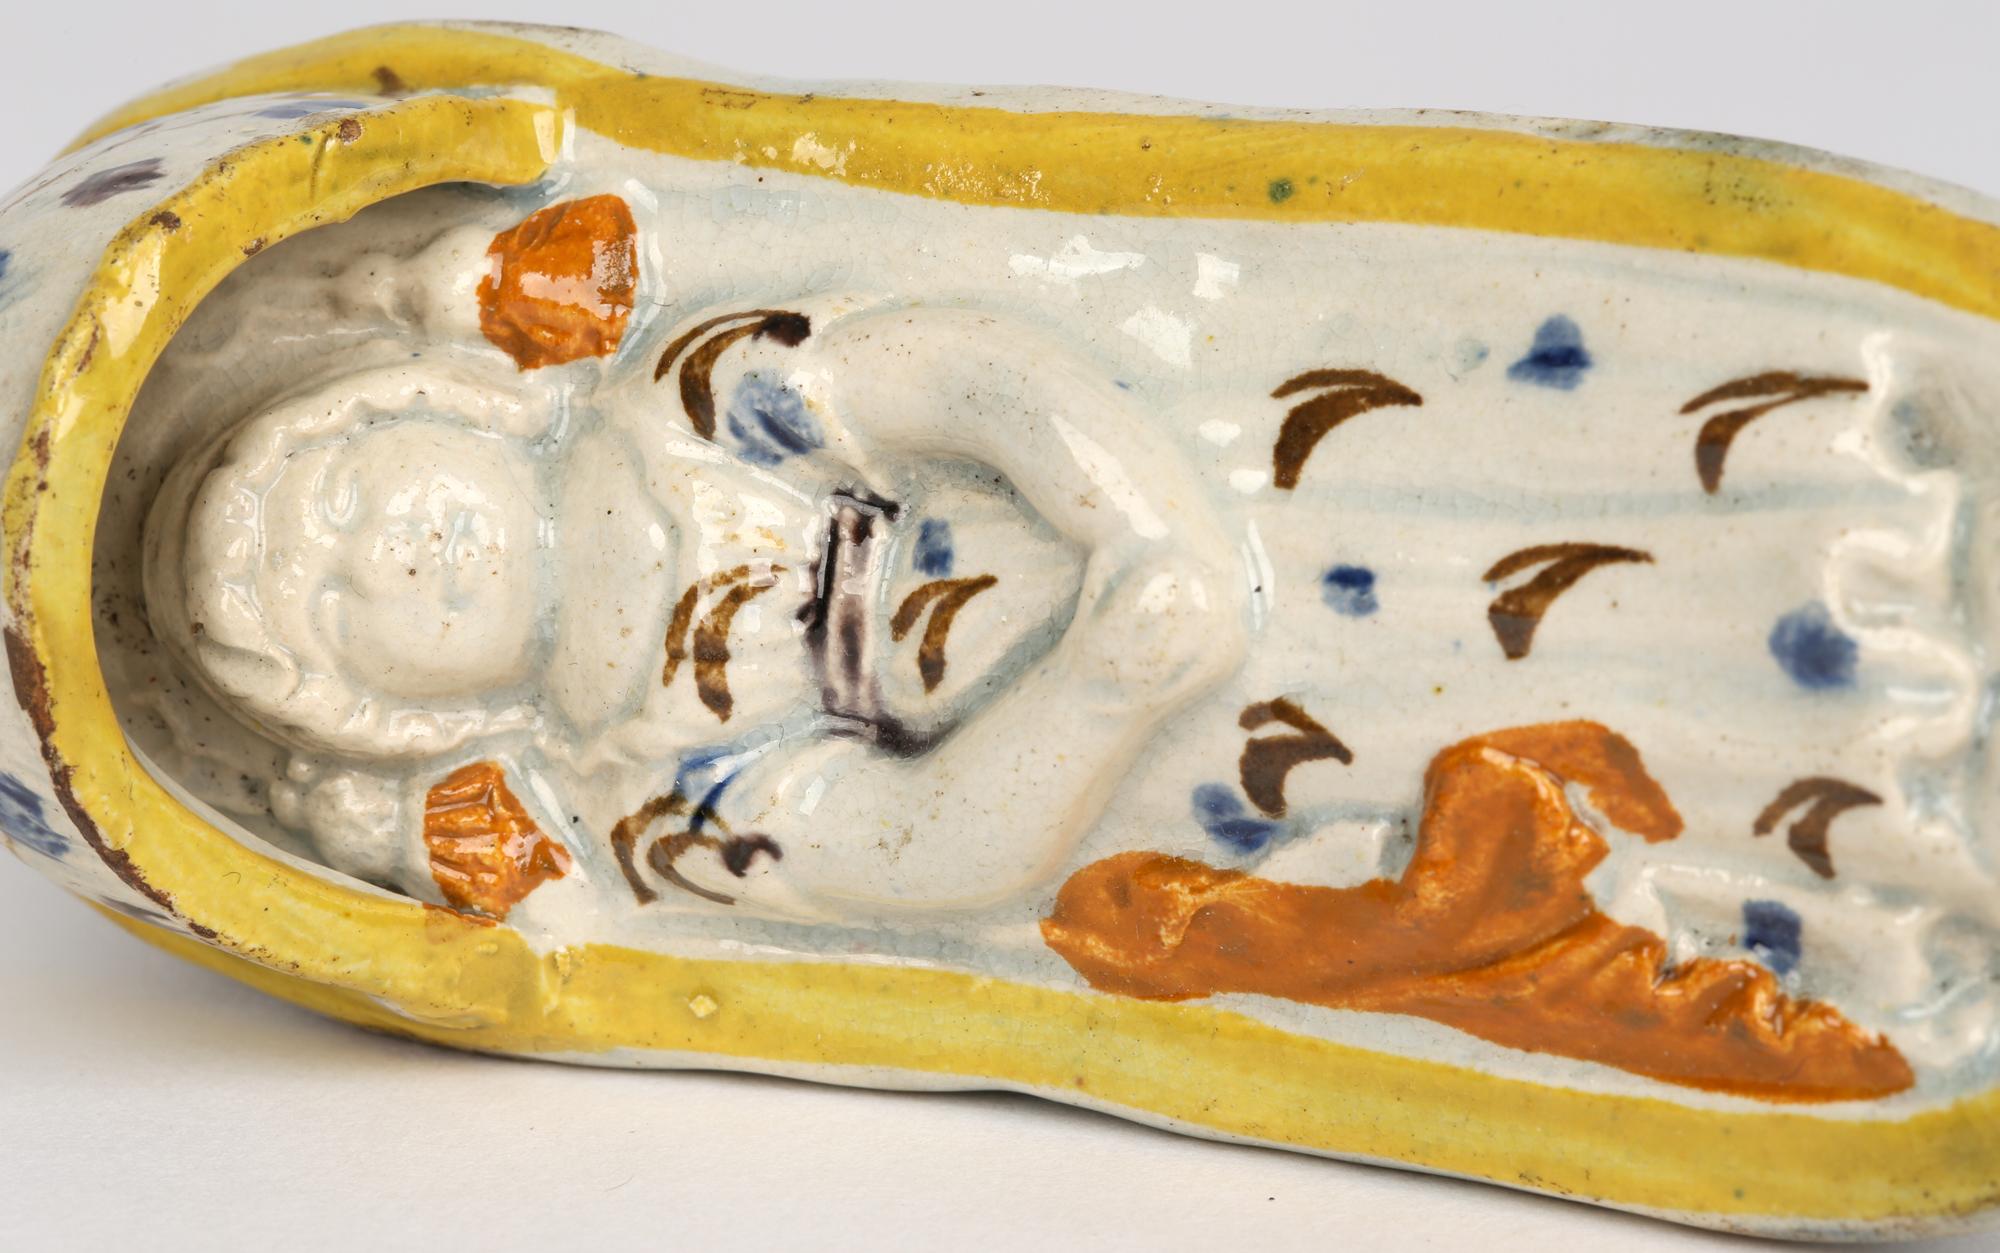 Eine schöne antike georgianische englische Prattware-Keramikwiege mit einem schlafenden Kind aus der Zeit um 1800. Die Wiege steht erhöht auf zwei Wippen und ist als Korb mit einer Haube an einem Ende modelliert. Das Kind liegt in der Wiege und